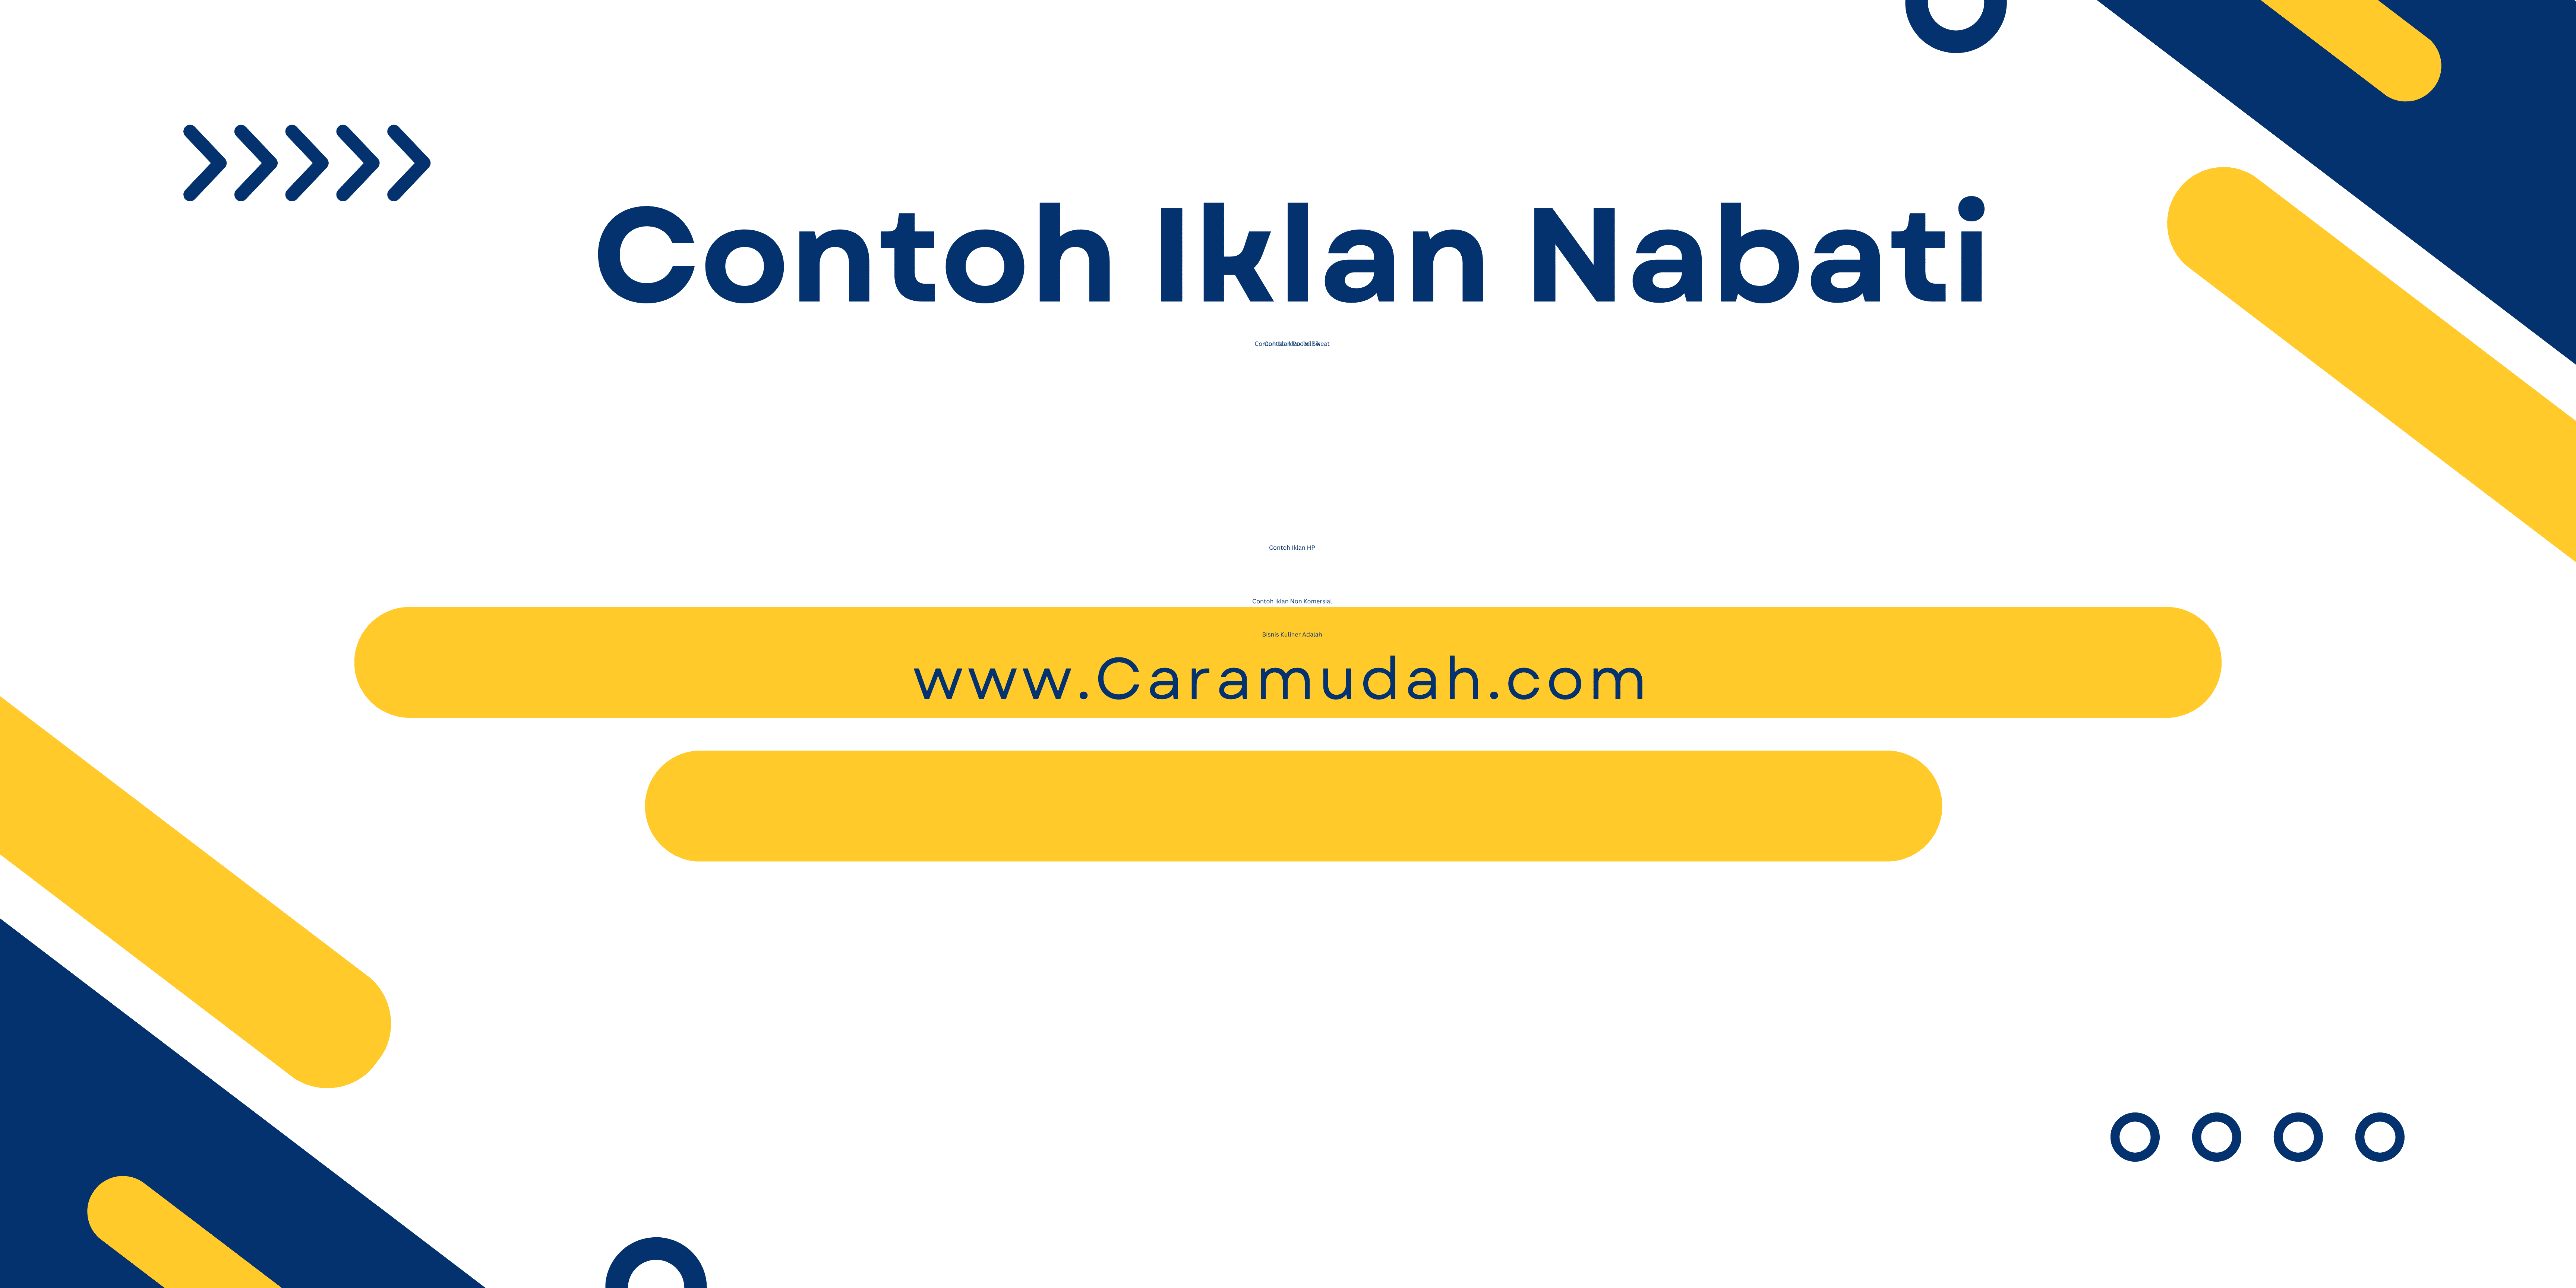 Contoh Iklan Nabati